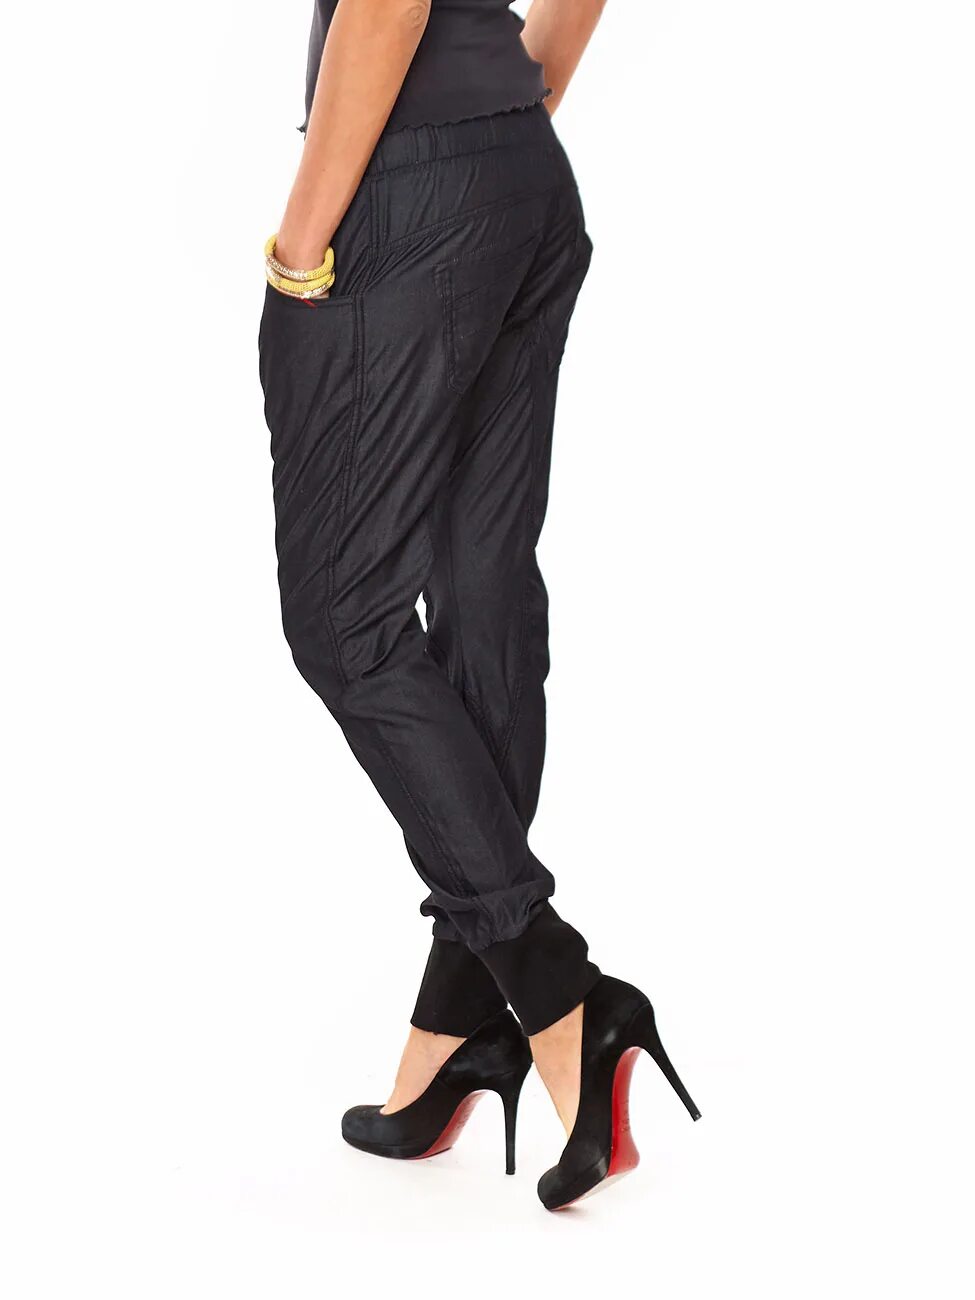 Брюки галифе (56 / 164 - 170). Galife брюки женские. Необычные женские брюки. Брюки галифе женские. Купить брюки интернет магазине недорого